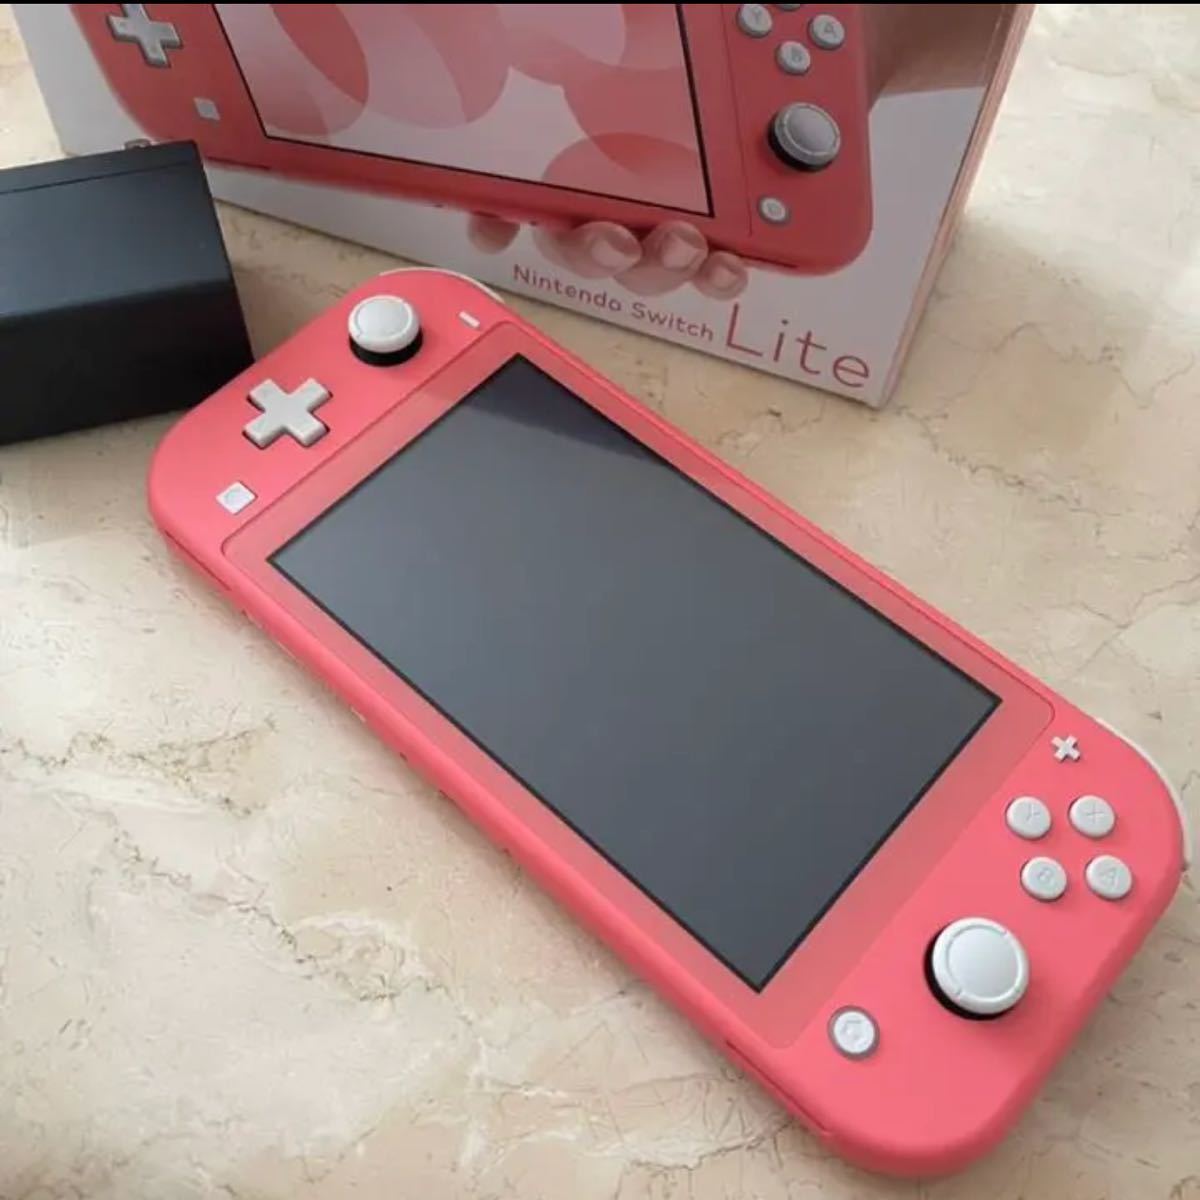 Nintendo switch light コーラル あつまれどうぶつの森 ゲーム機 任天堂 スウィッチ ピンク